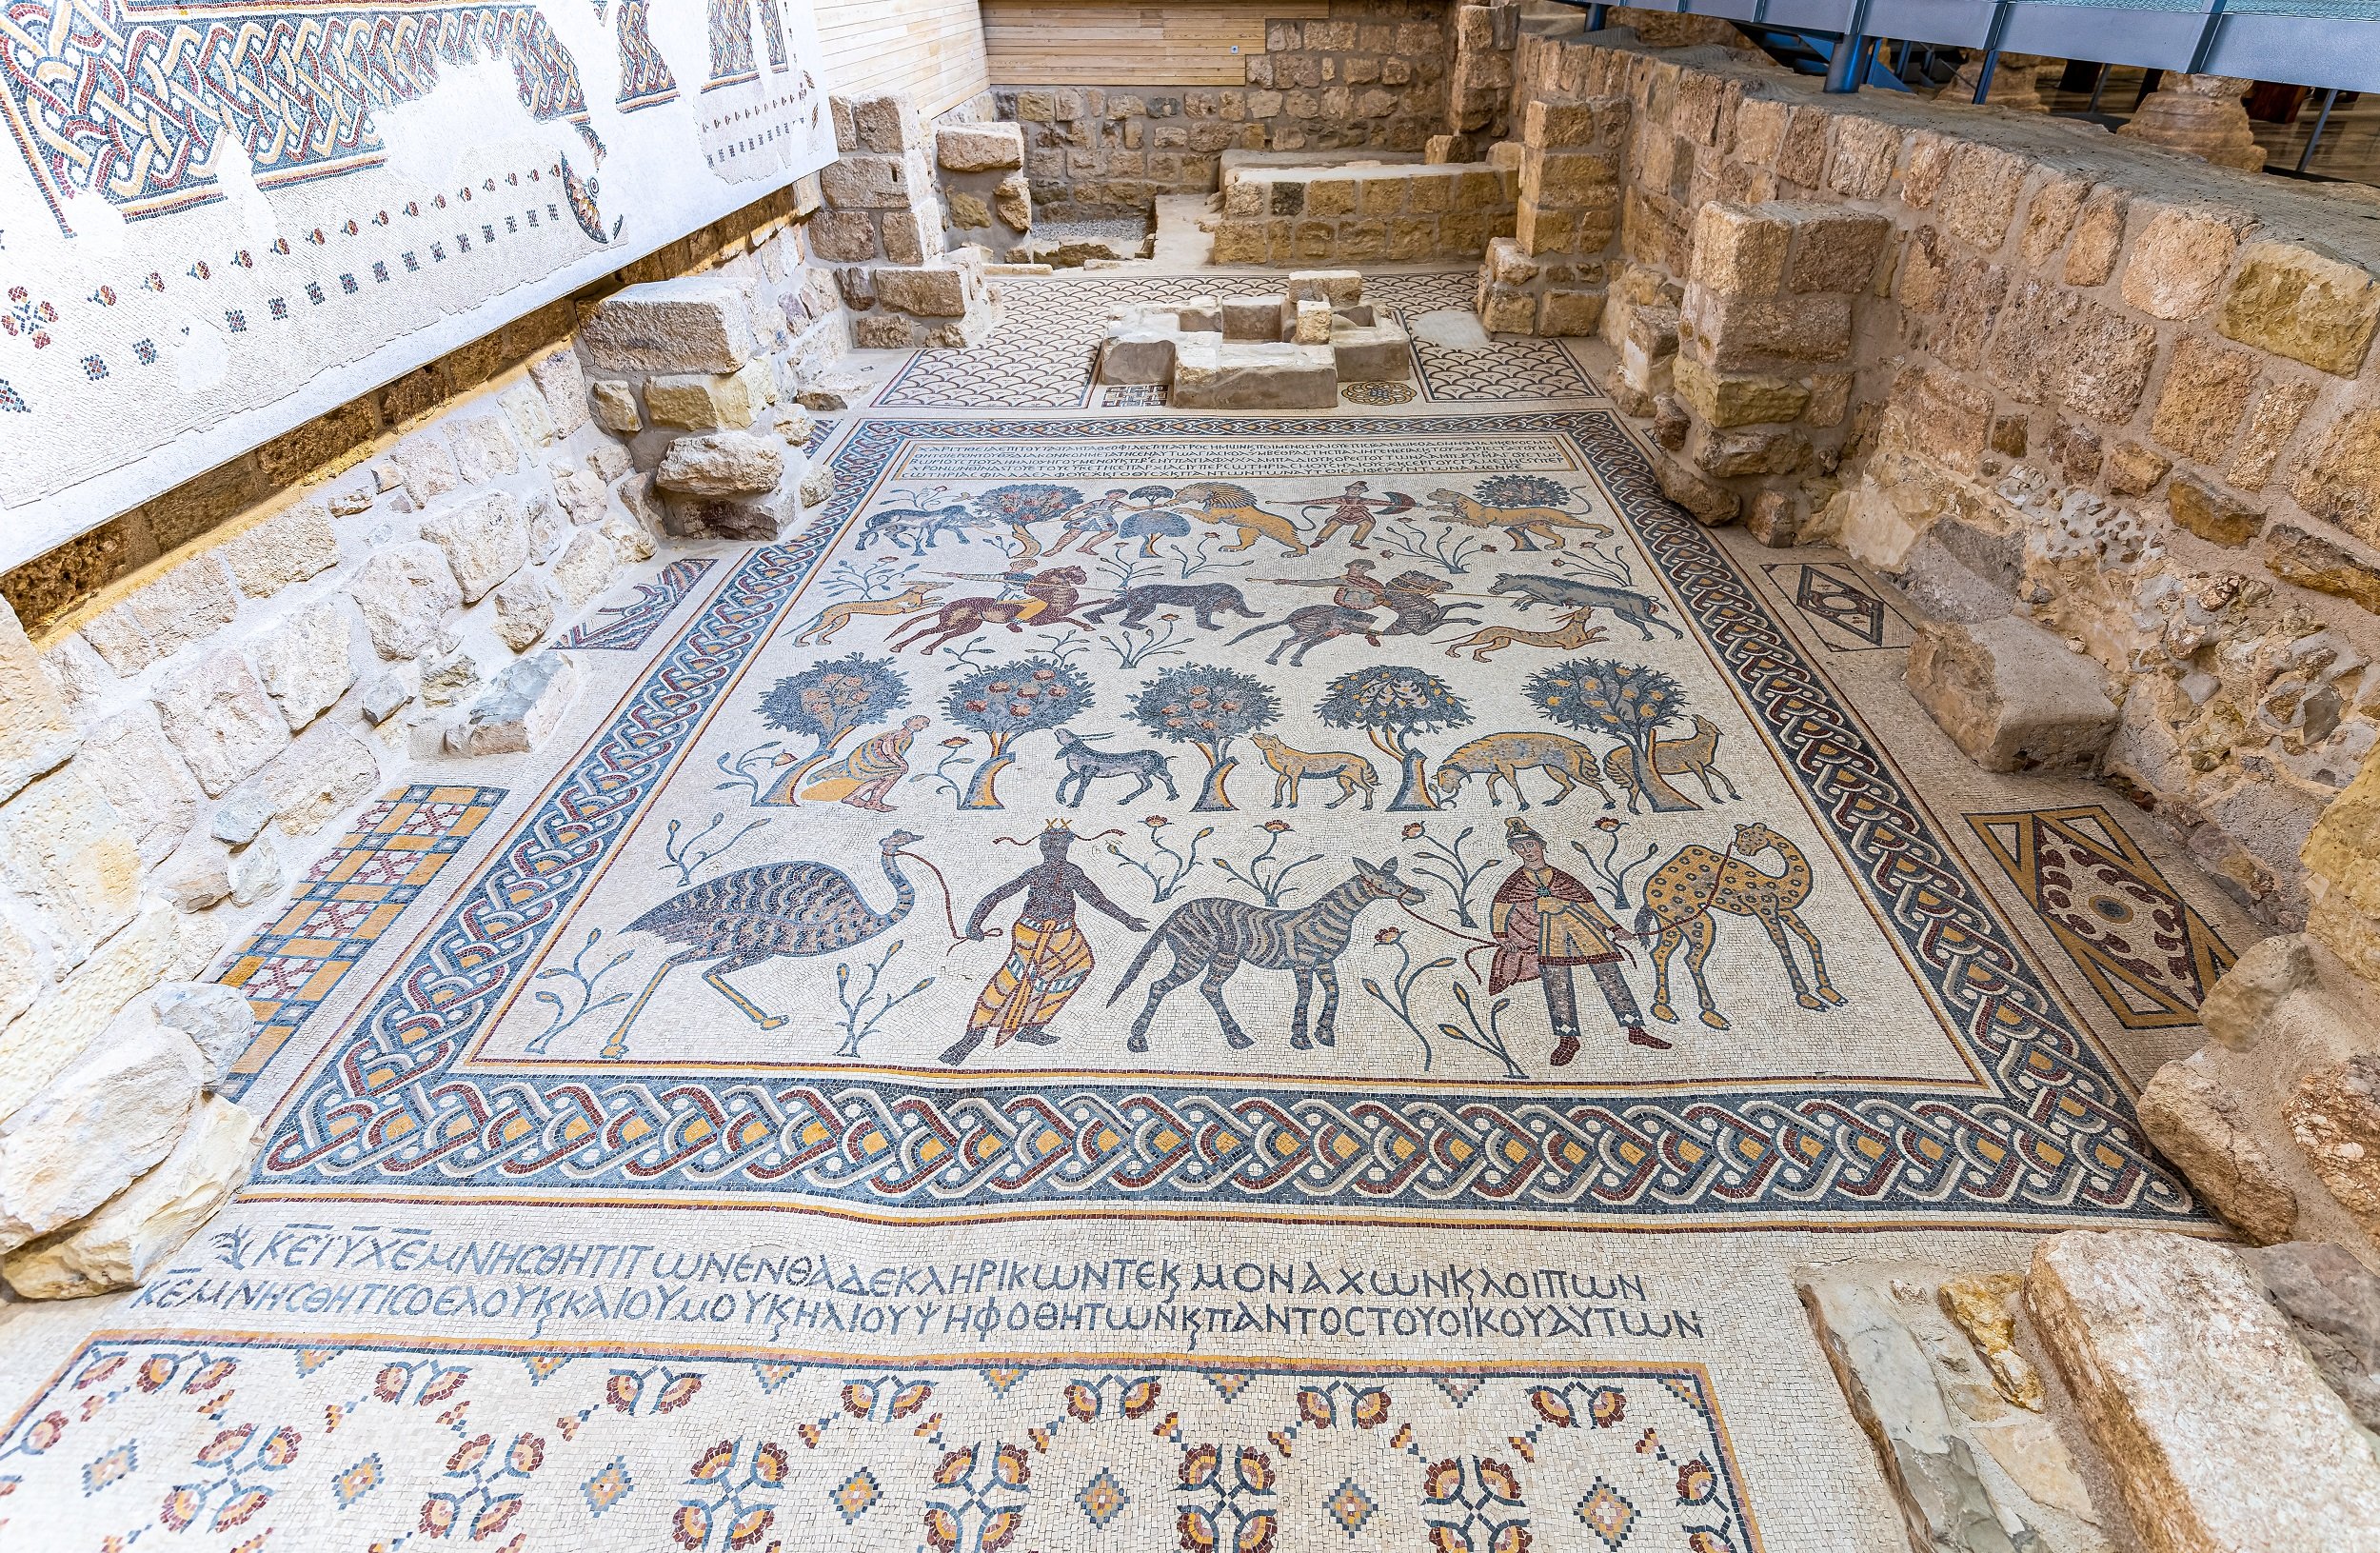  Travel Guide to Jordan - Memorial Church of Moses 